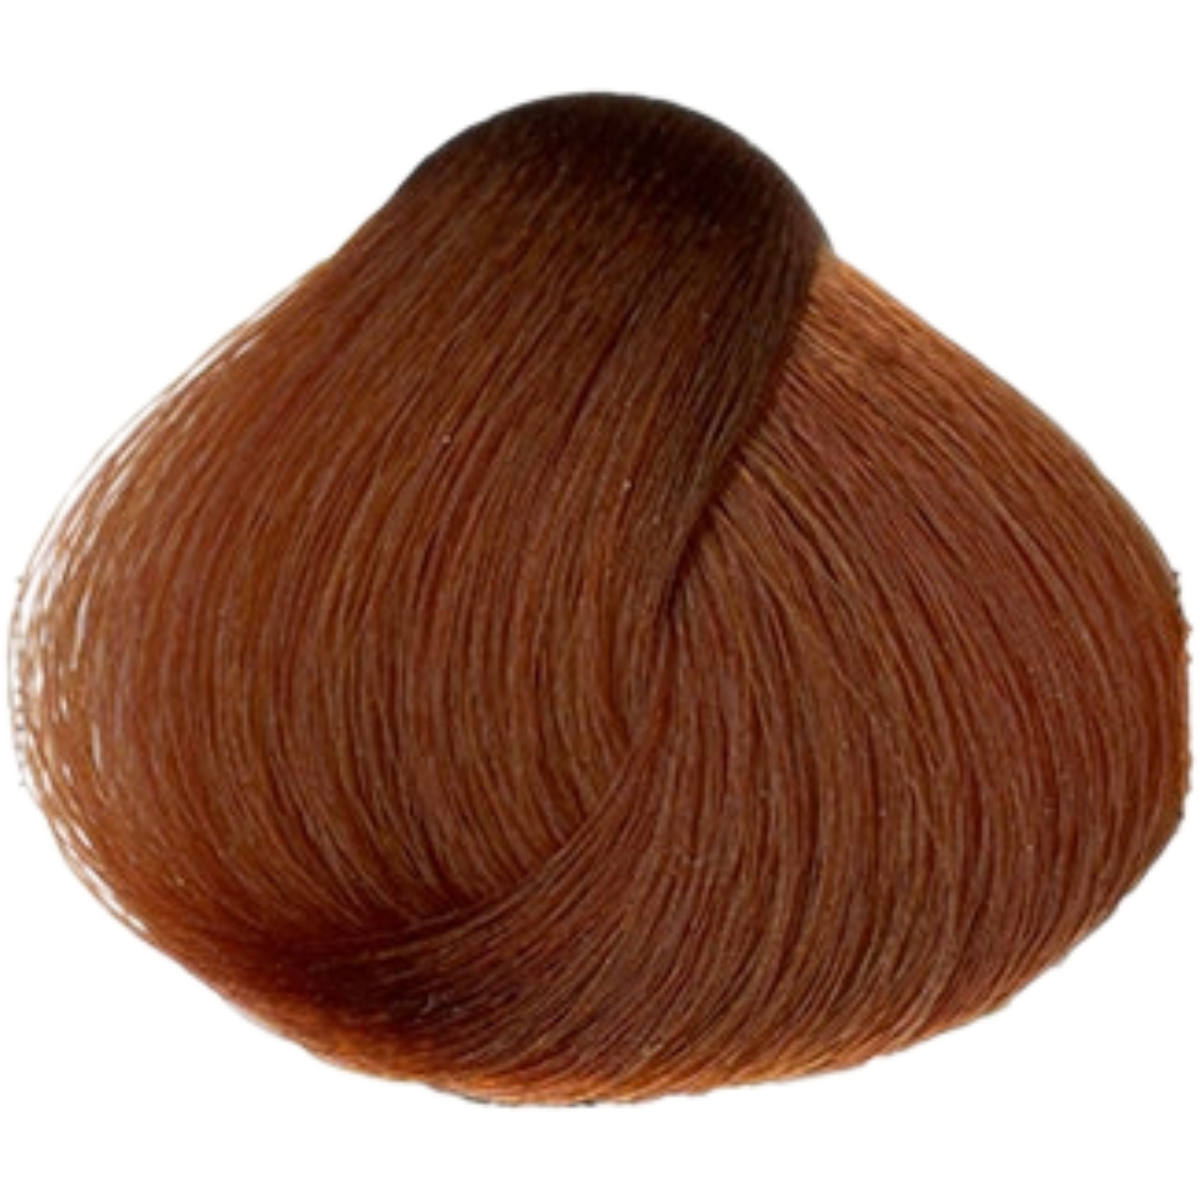 צבע שיער 7.4 COPPER BLONDE פארמויטה FarmaVita צבע לשיער 60 גרם